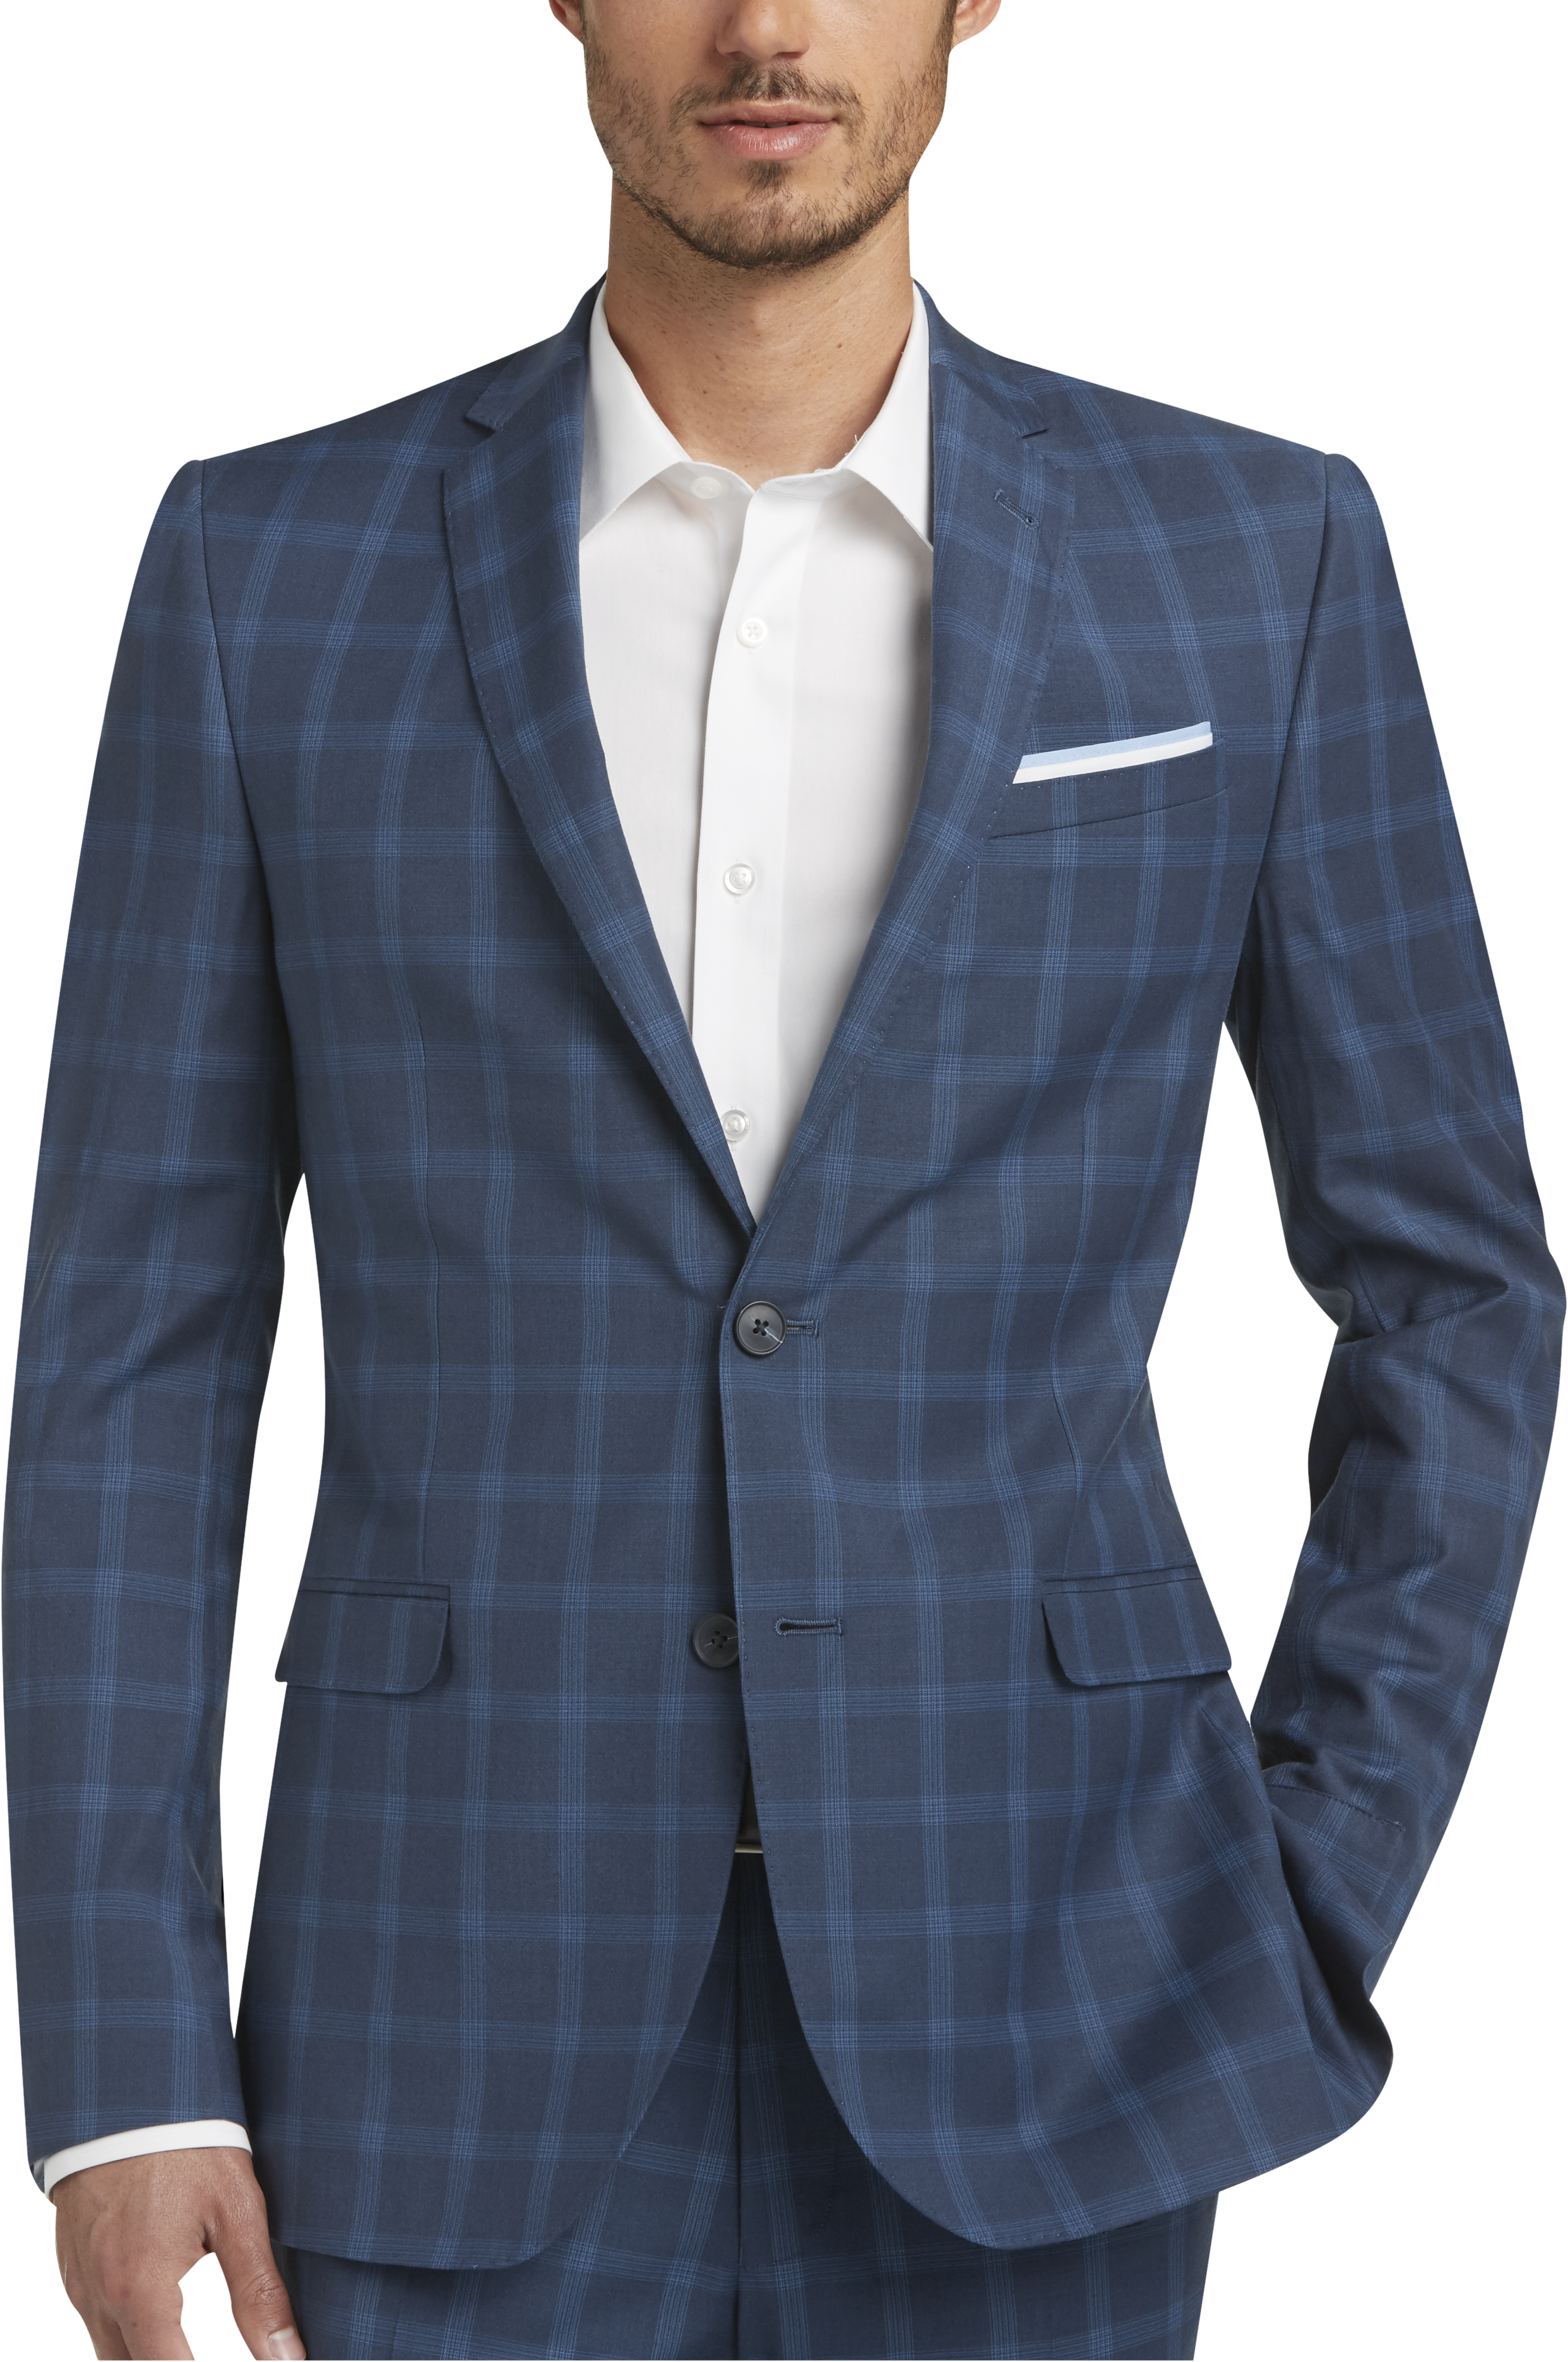 Egara Blue Plaid Extreme Slim Fit Suit - Men's Suits | Men's Wearhouse